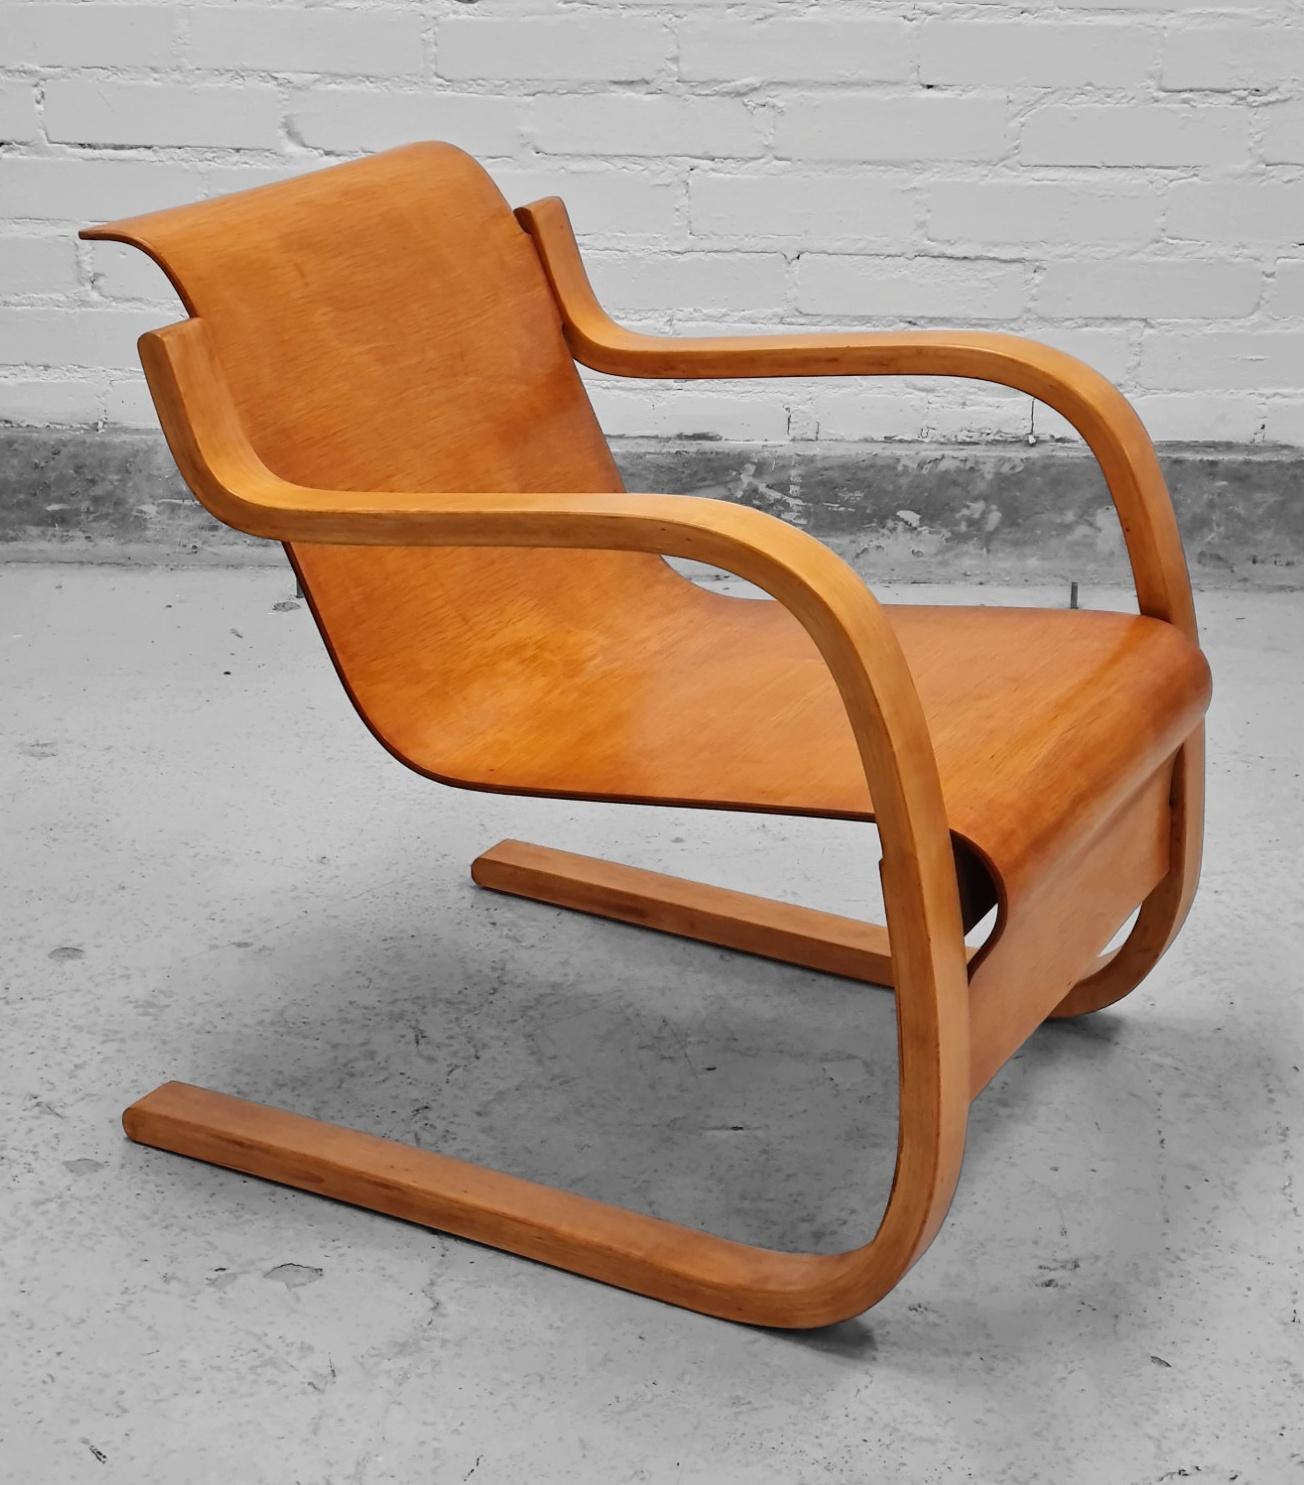 Eines der ikonischsten und schönsten Möbelstücke von Alvar Aalto, der Stuhl Modell 42, auch bekannt als  Federstuhl, 